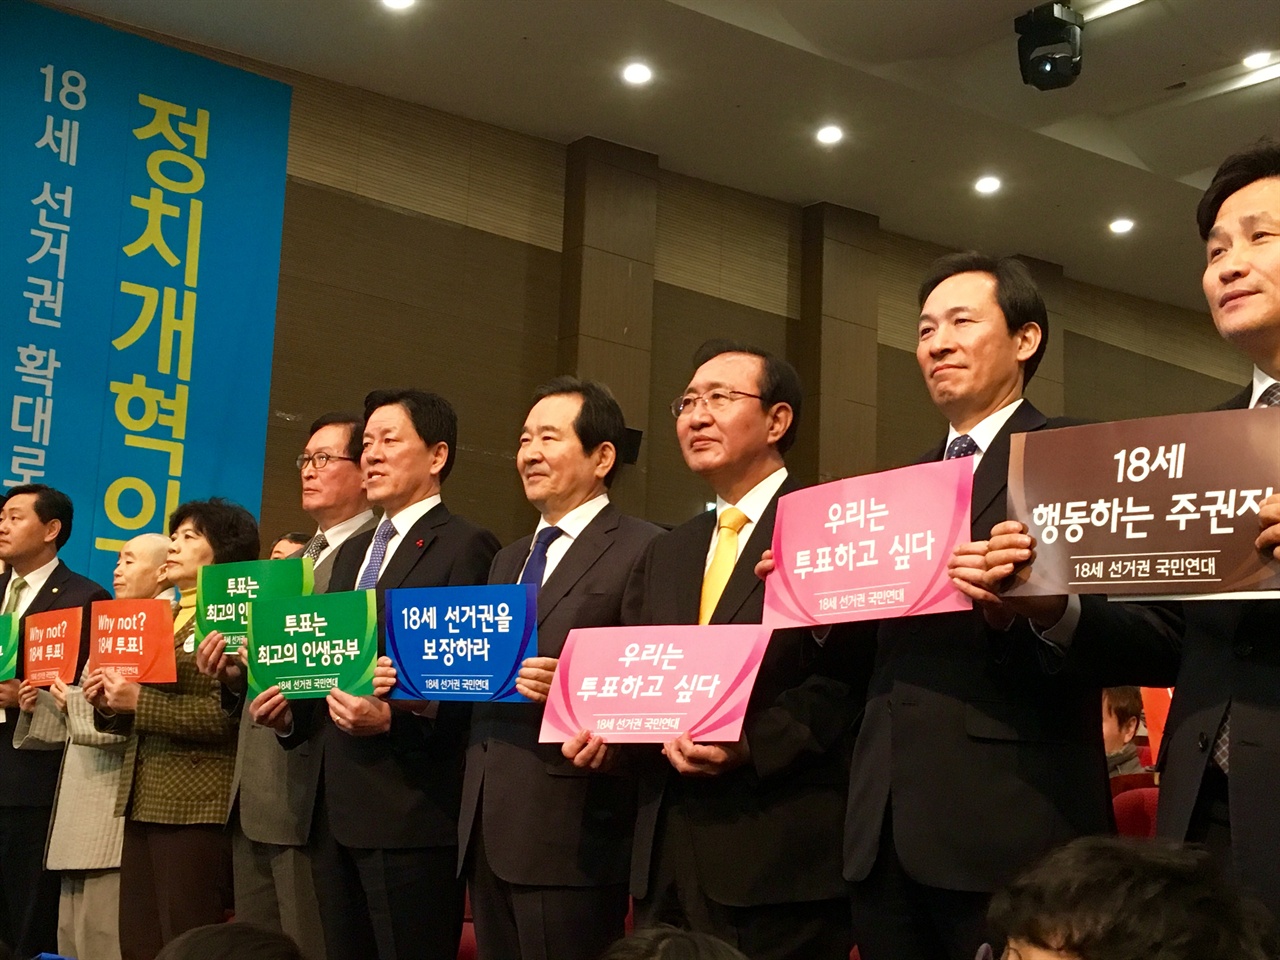 19일 오전 18세 선거권 보장을 위한 국민대회가 국회 의원회관 대회의실에서 열렸다. 행사에 참석한 국회의원들이 손피켓을 들고있다.